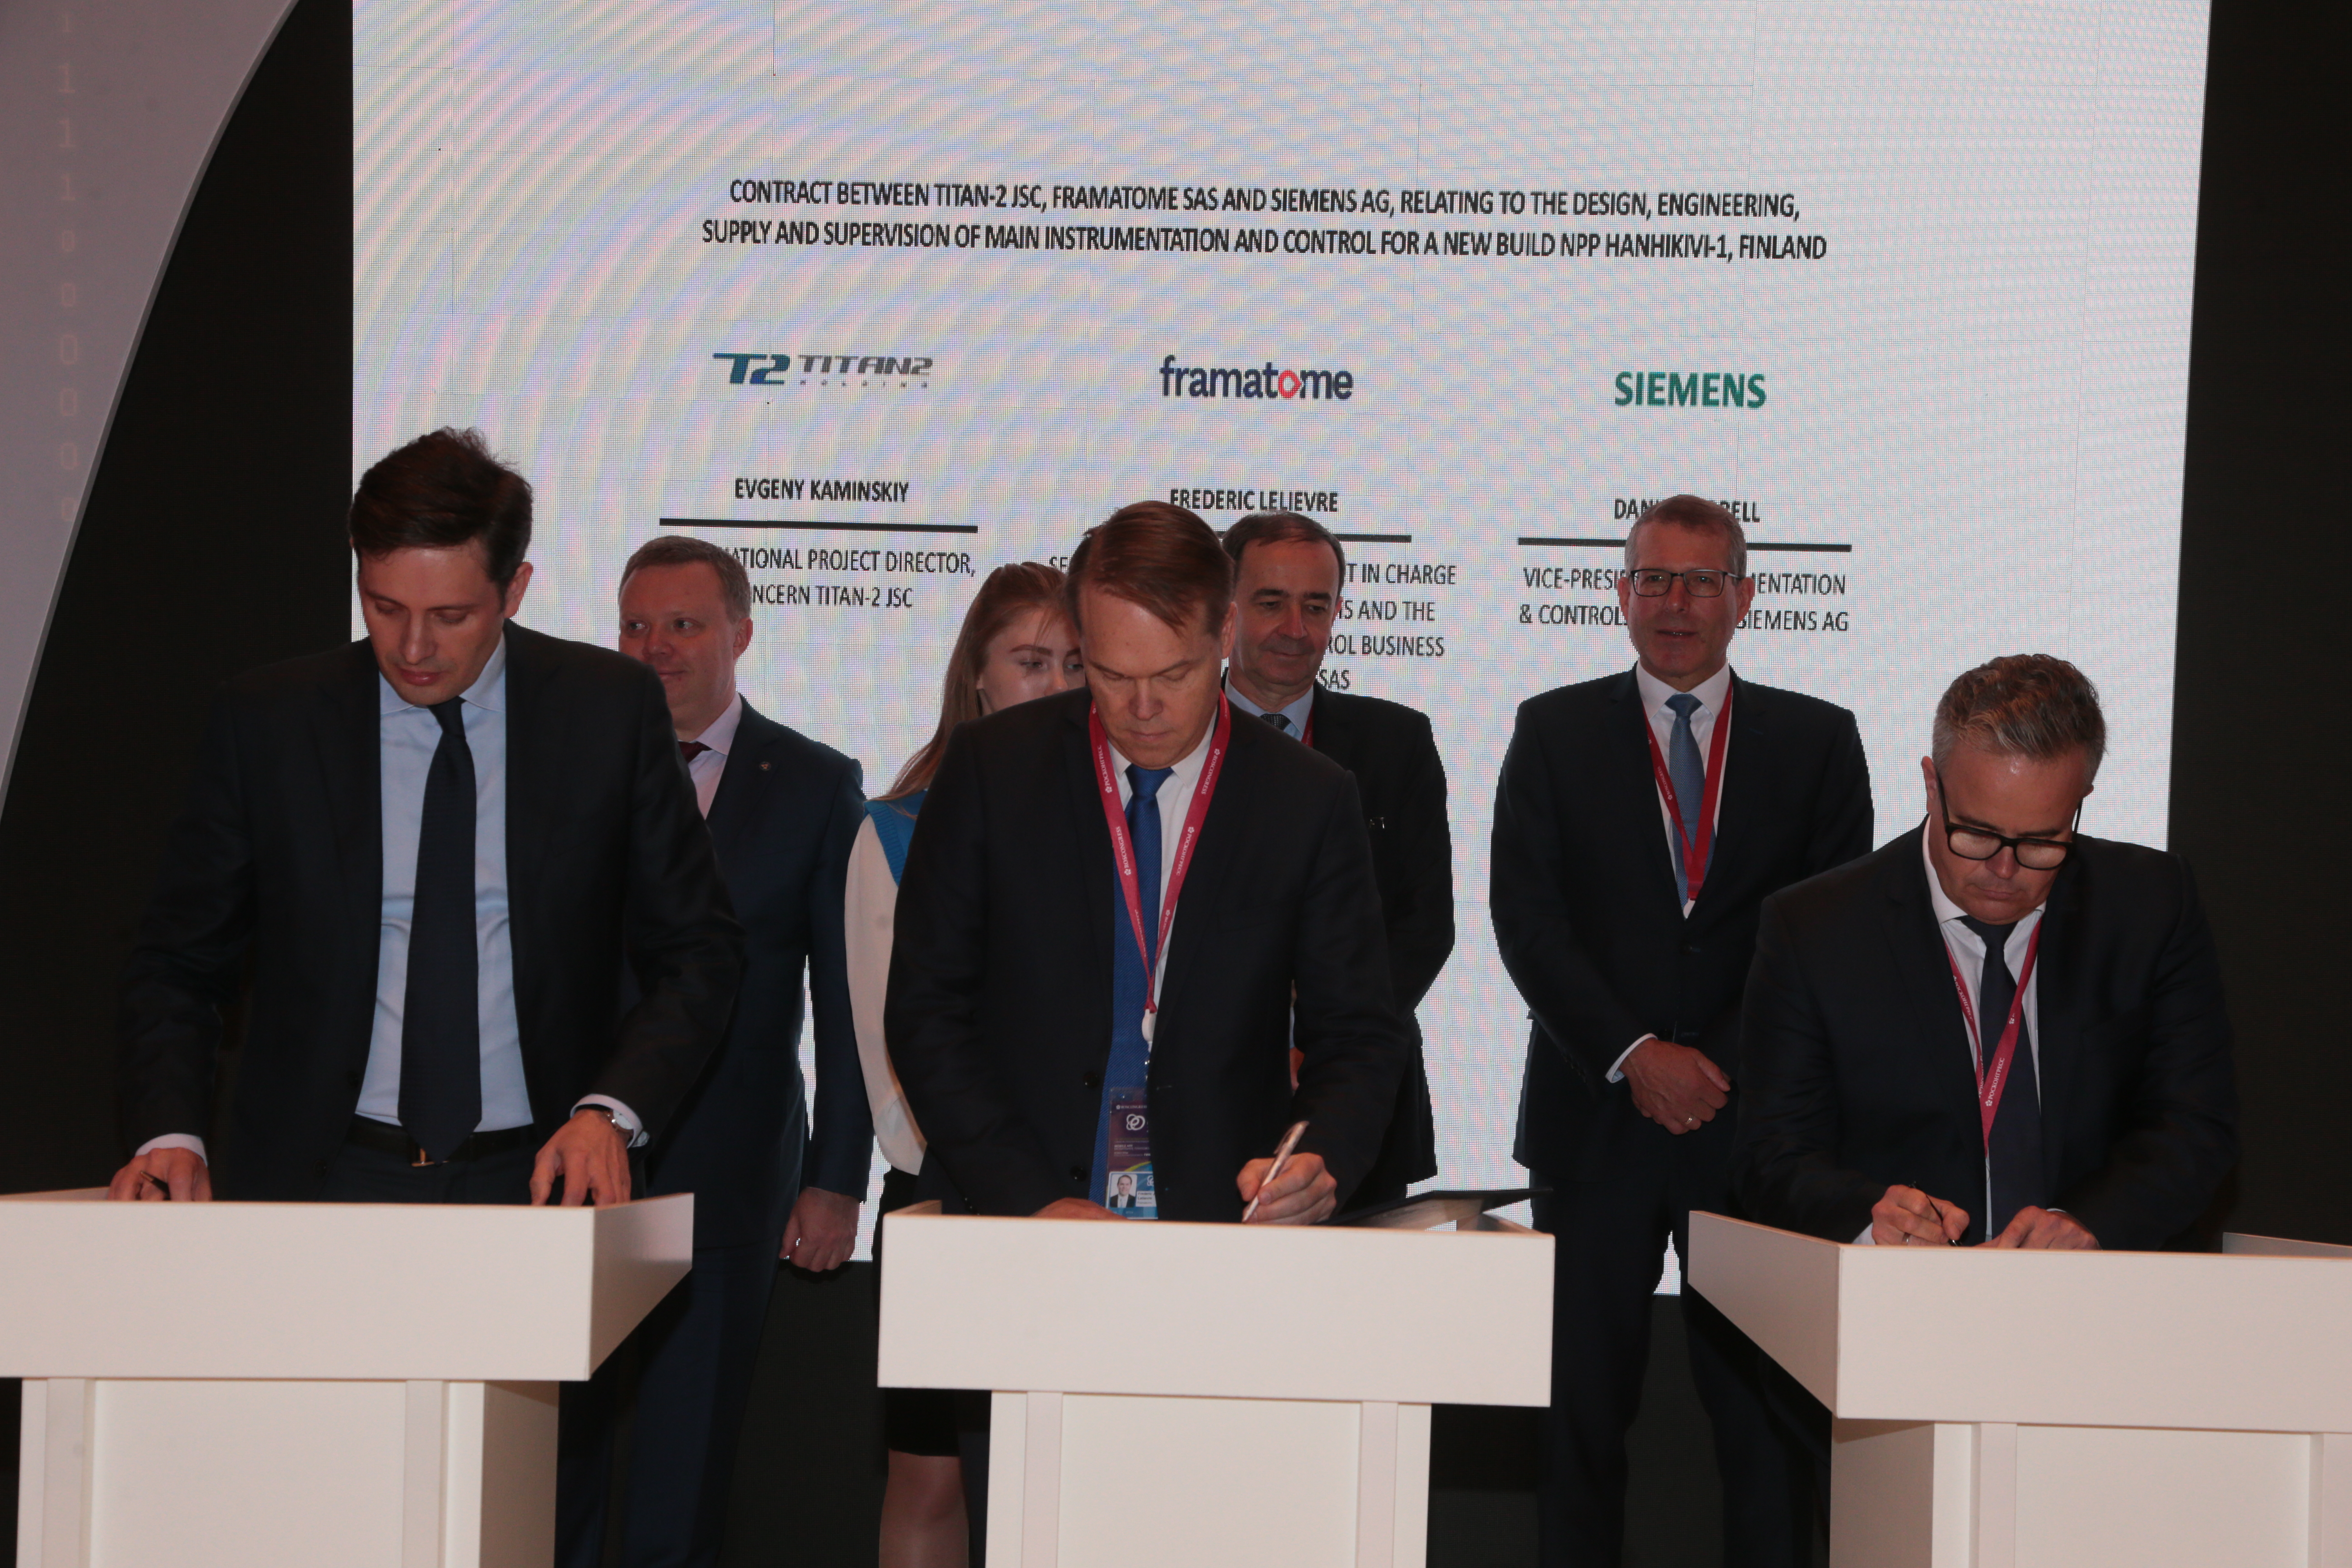  TITAN-2 et le consortium Framatome-Siemens signent un Contrat pour L’approvisionnement en systèmes d’I&C de la centrale nucléaire Hanhikivi-1